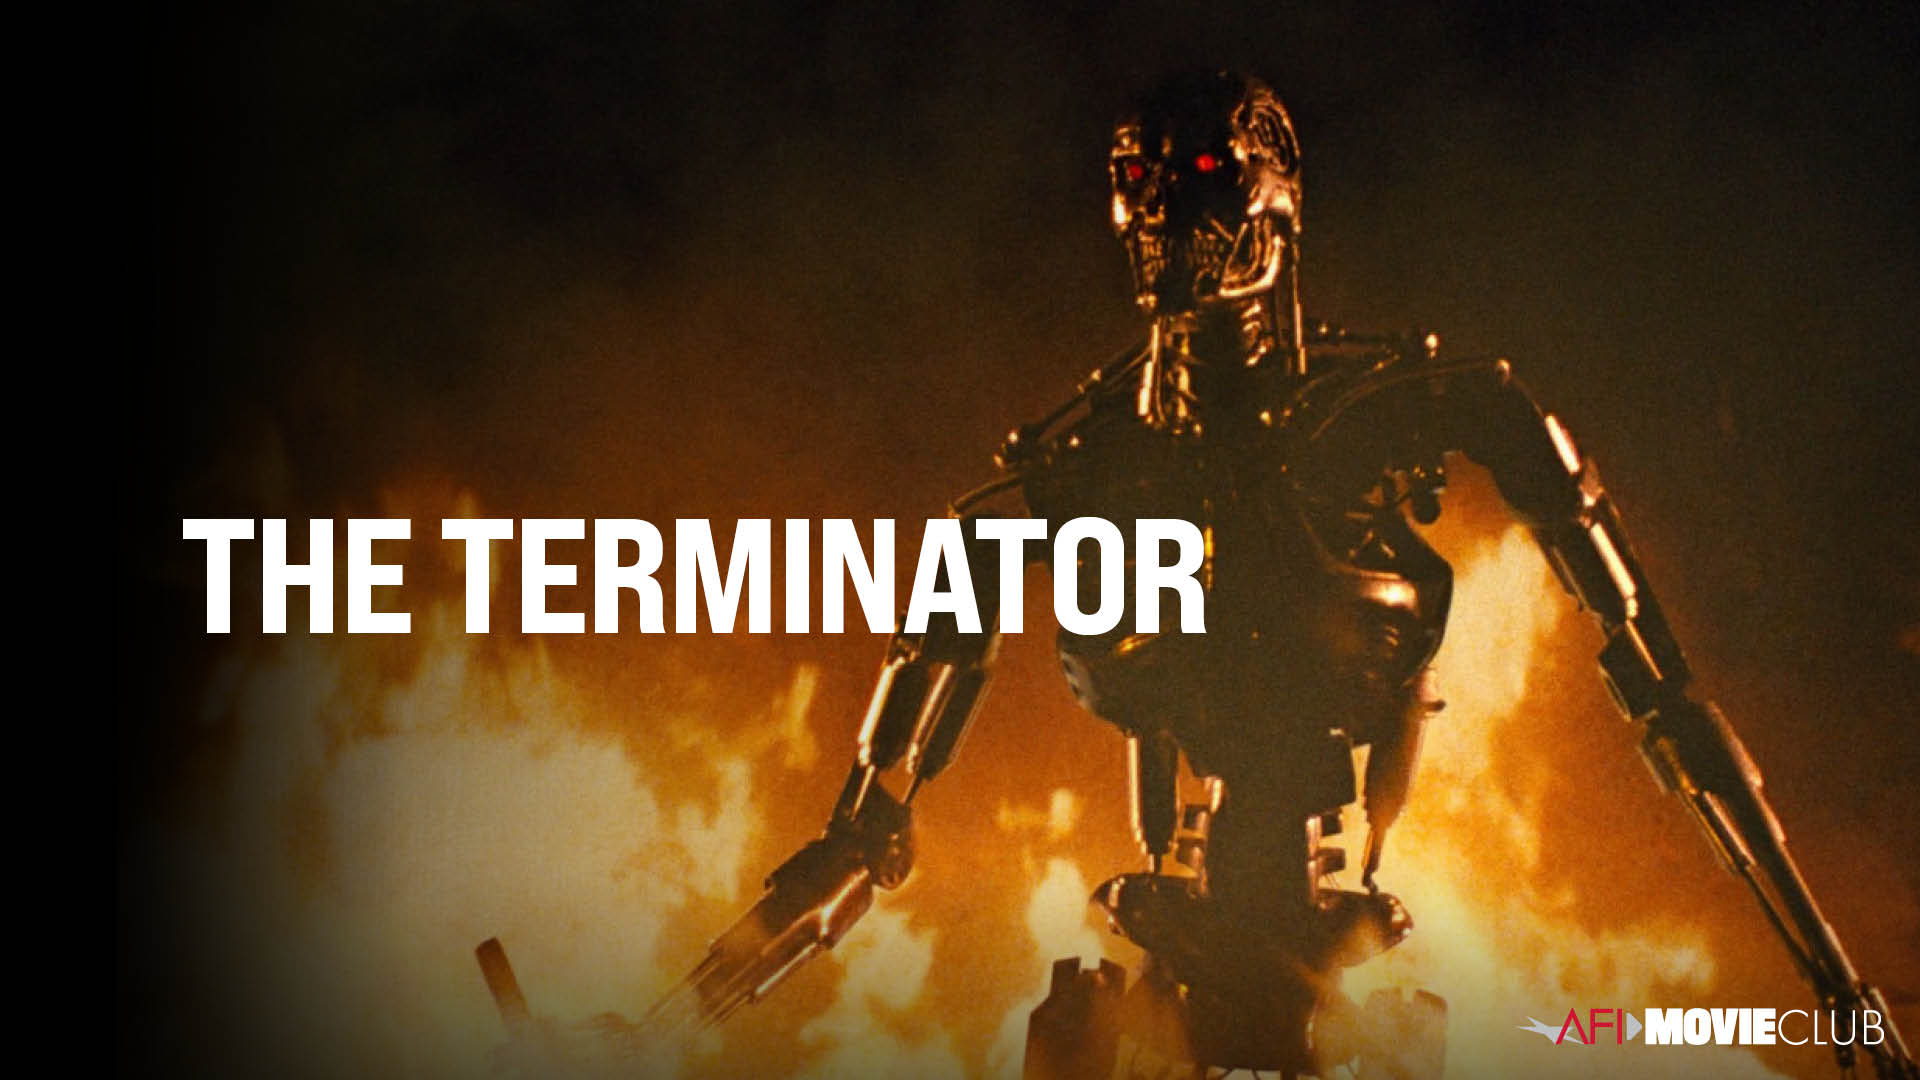 Terminator Film Still